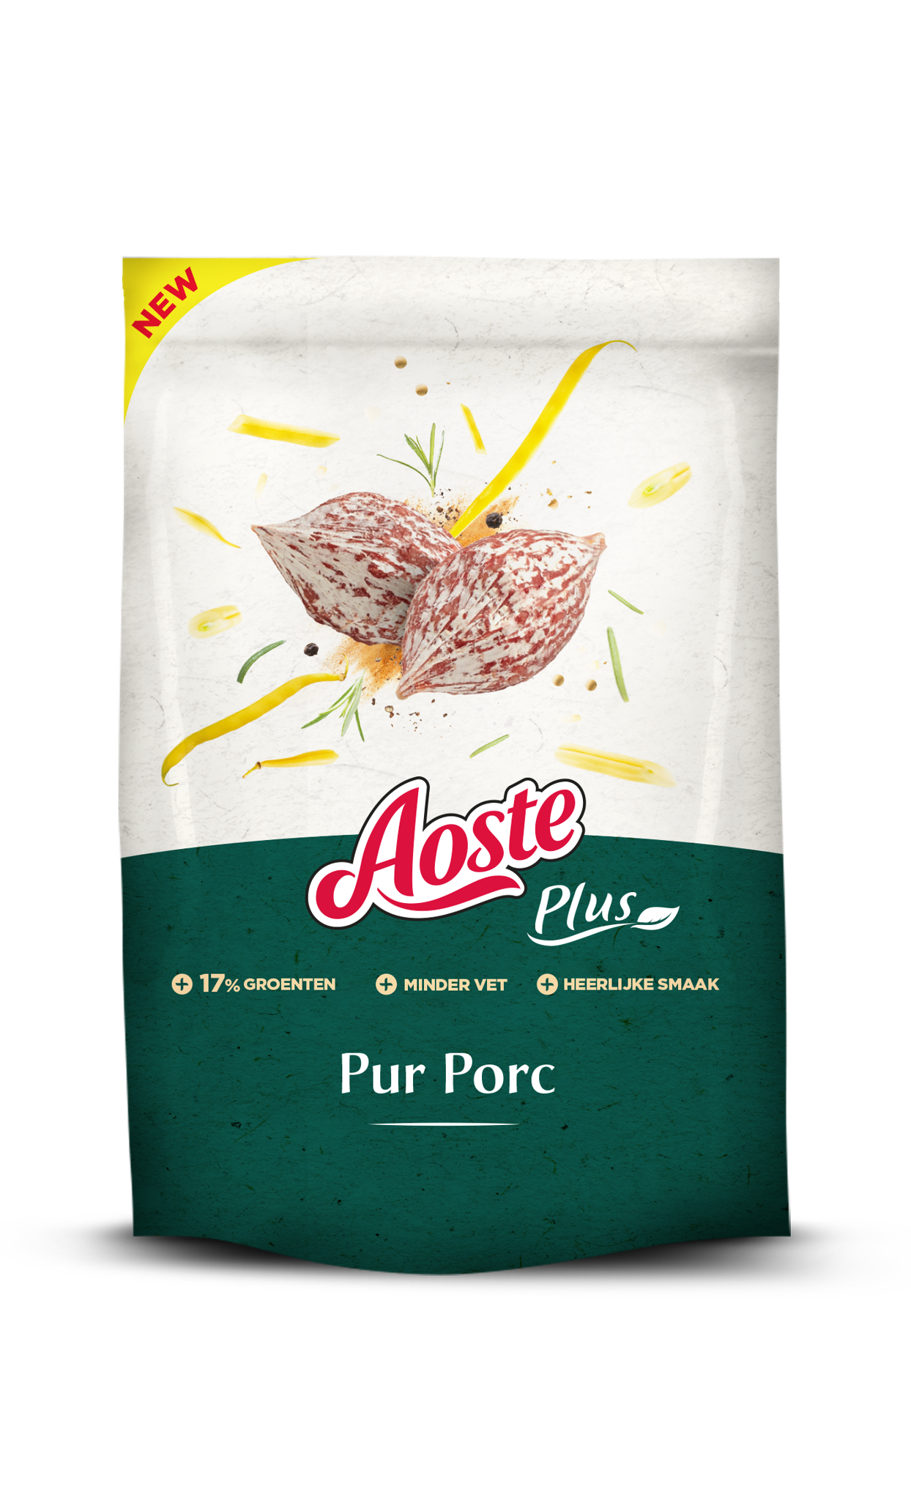 Aoste Plus Snack Pur Porc (snack apéro, en exclusivité chez Delhaize) : 2,99 € pour 80 g